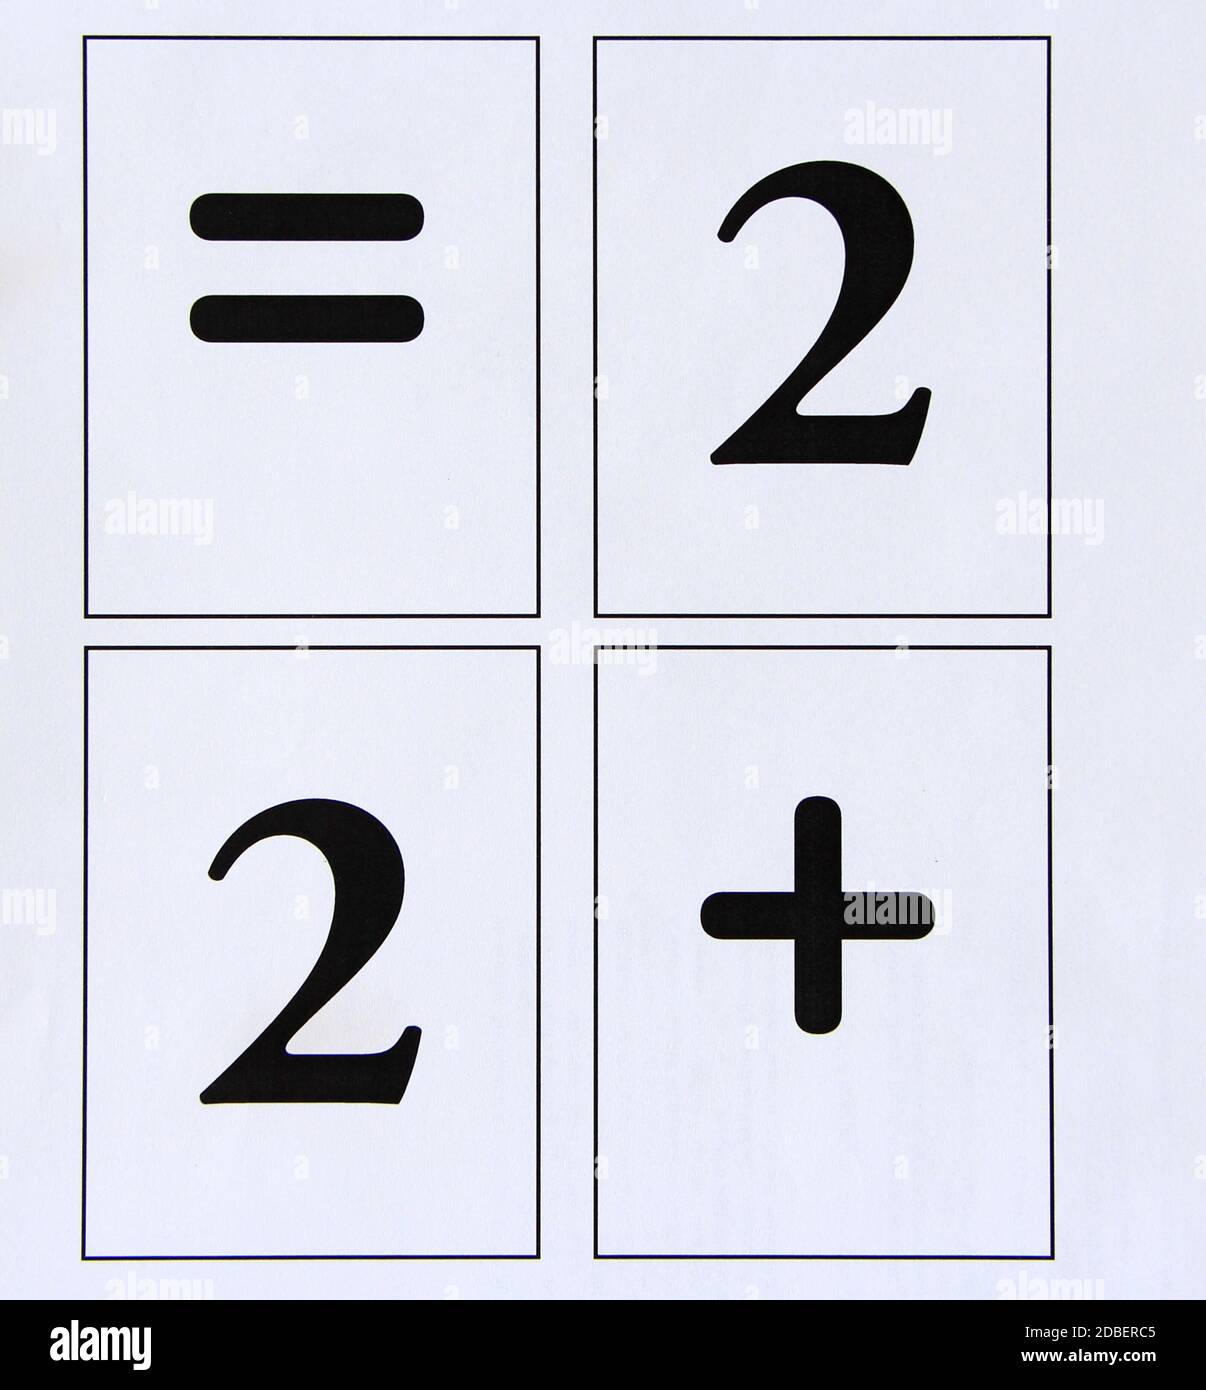 Les signes mathématiques sont le signe plus et le chiffre 2. Équation mathématique deux plus deux. Concept de retour à l'école. Égal pour l'école. Signes d'égalité et plus. Equa Banque D'Images